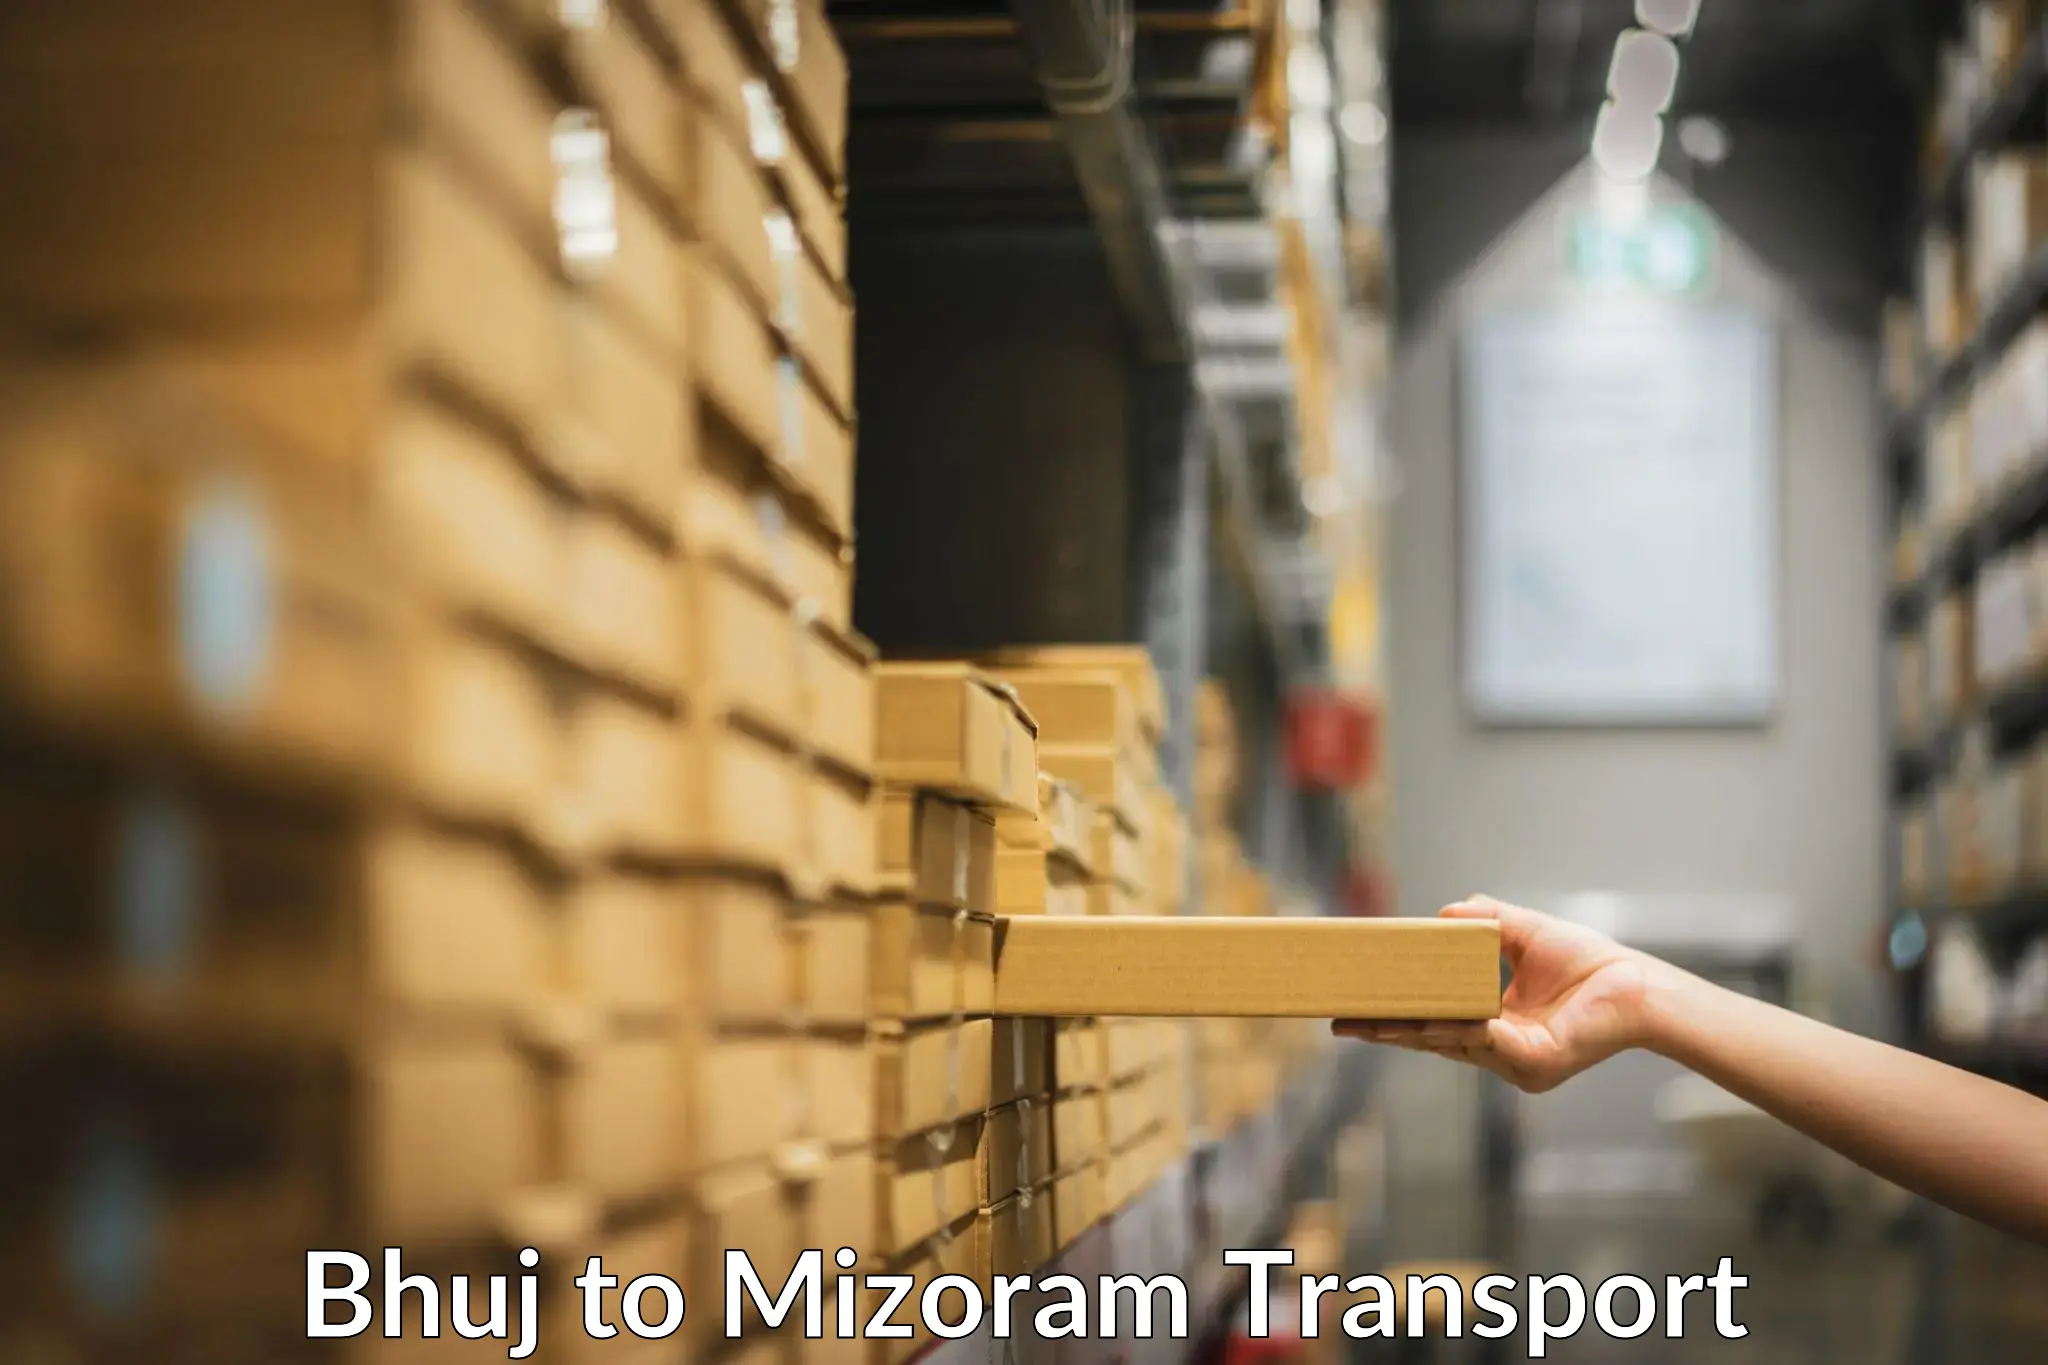 Furniture transport service Bhuj to Mizoram